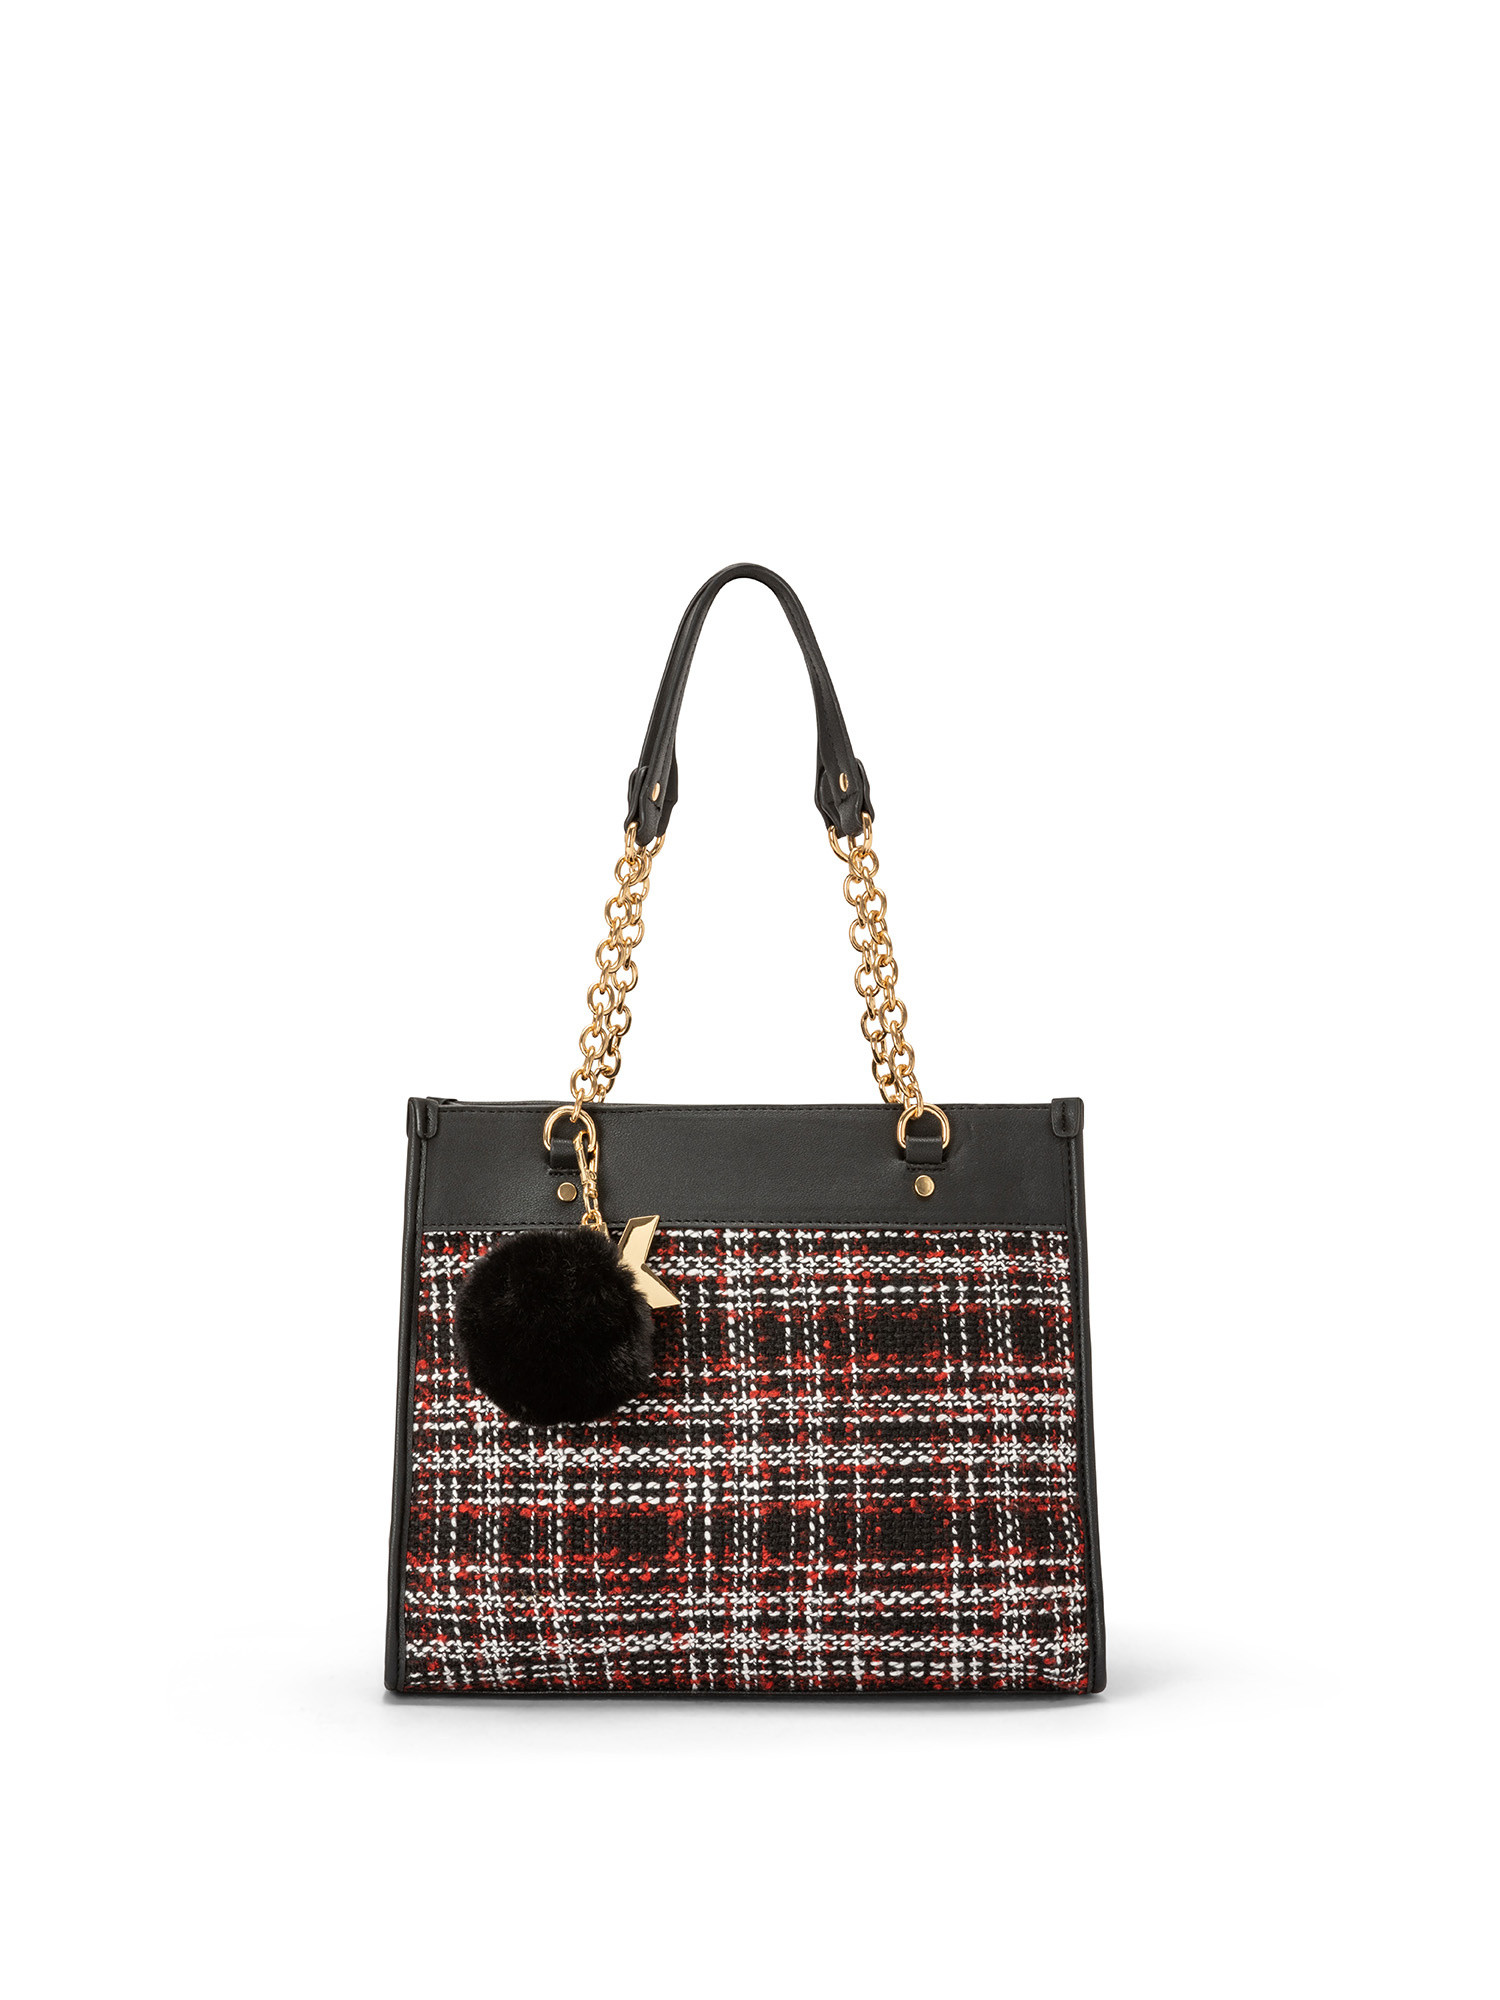 Koan - Shopping bag piccola con inserto scozzese, Nero, large image number 0